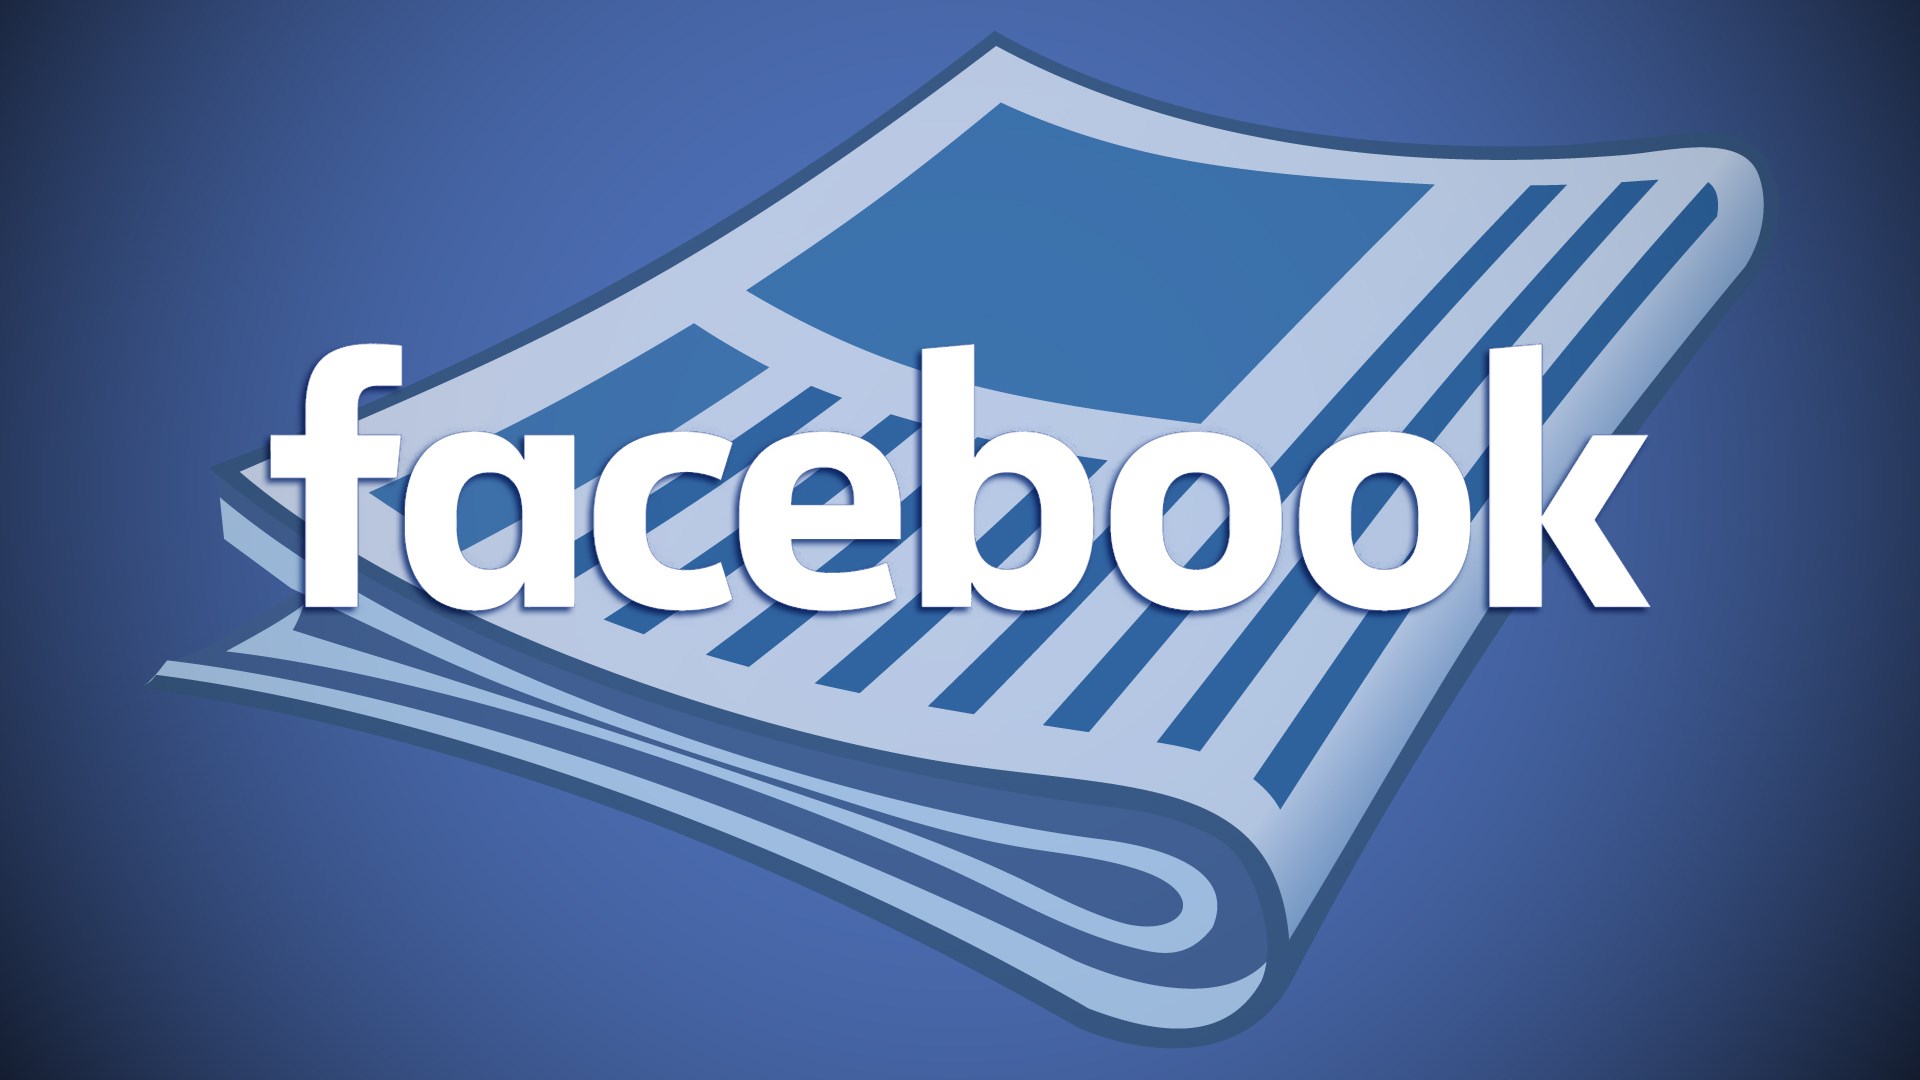 Facebook'un bağımsız yazarlar için haber bülteni araçları geliştirdiği bildirildi